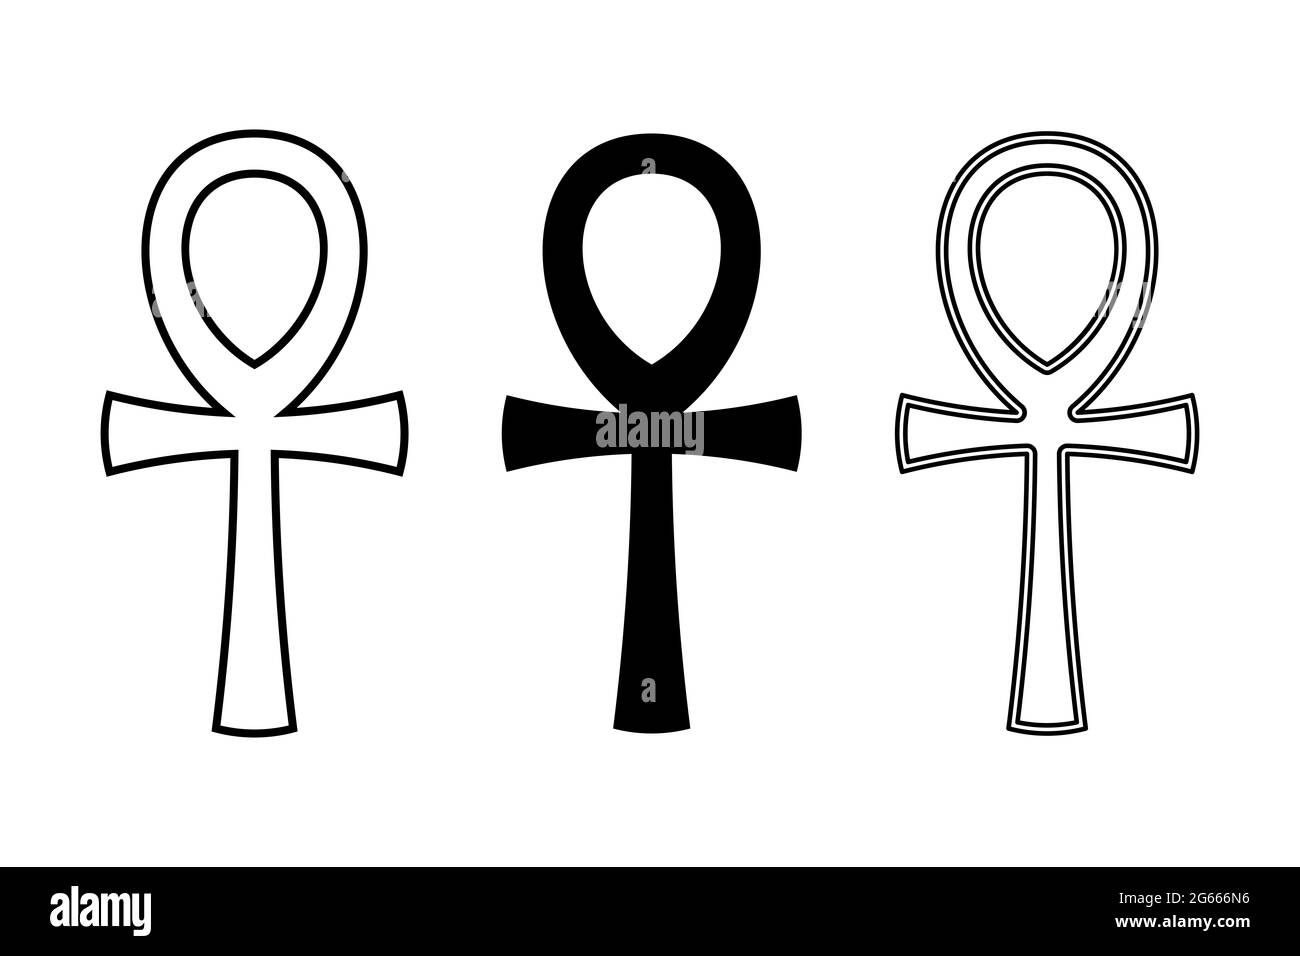 Trois symboles ankh. Aussi appelé clé de la vie, une croix avec poignée, un ancien symbole hiéroglyphique égyptien des dieux et des pharaons, représentant la vie. Banque D'Images